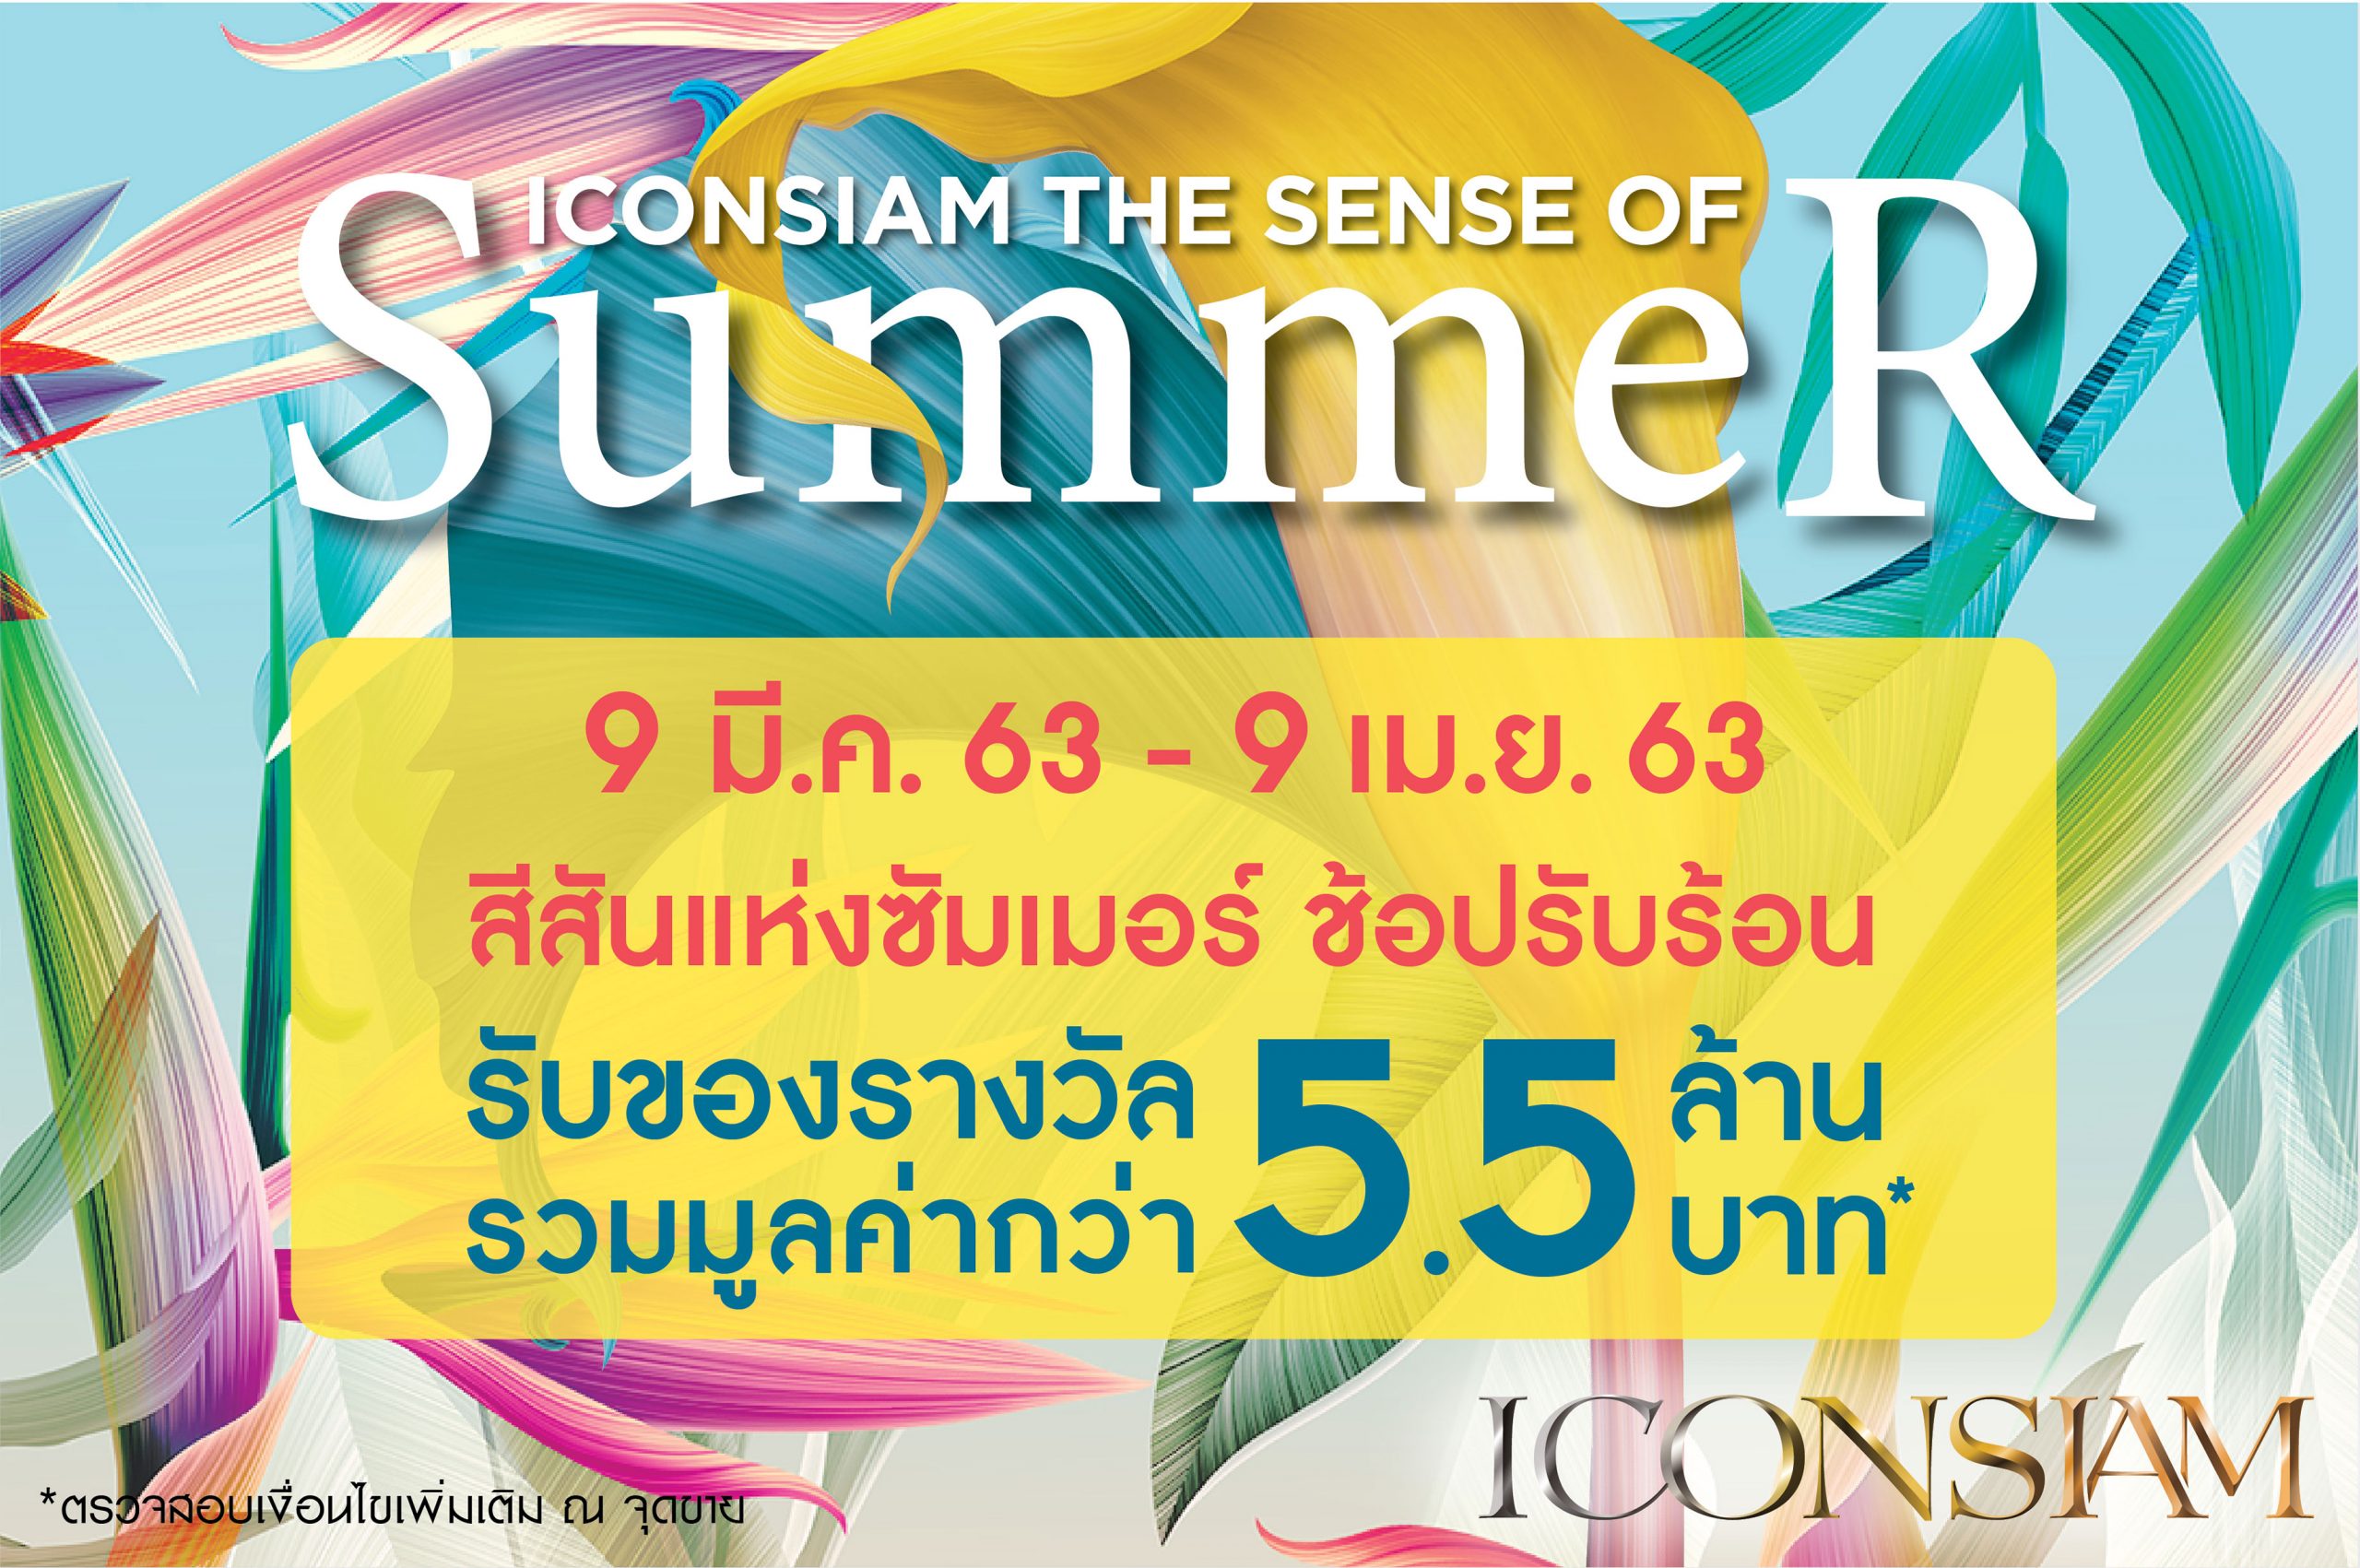 ไอคอนสยาม ชวนช้อปรับลมร้อนกับแคมเปญสุดพิเศษ ICONSIAM The Sense of Summer 2020 ระหว่างวันนี้ 9 เมษายน 2563